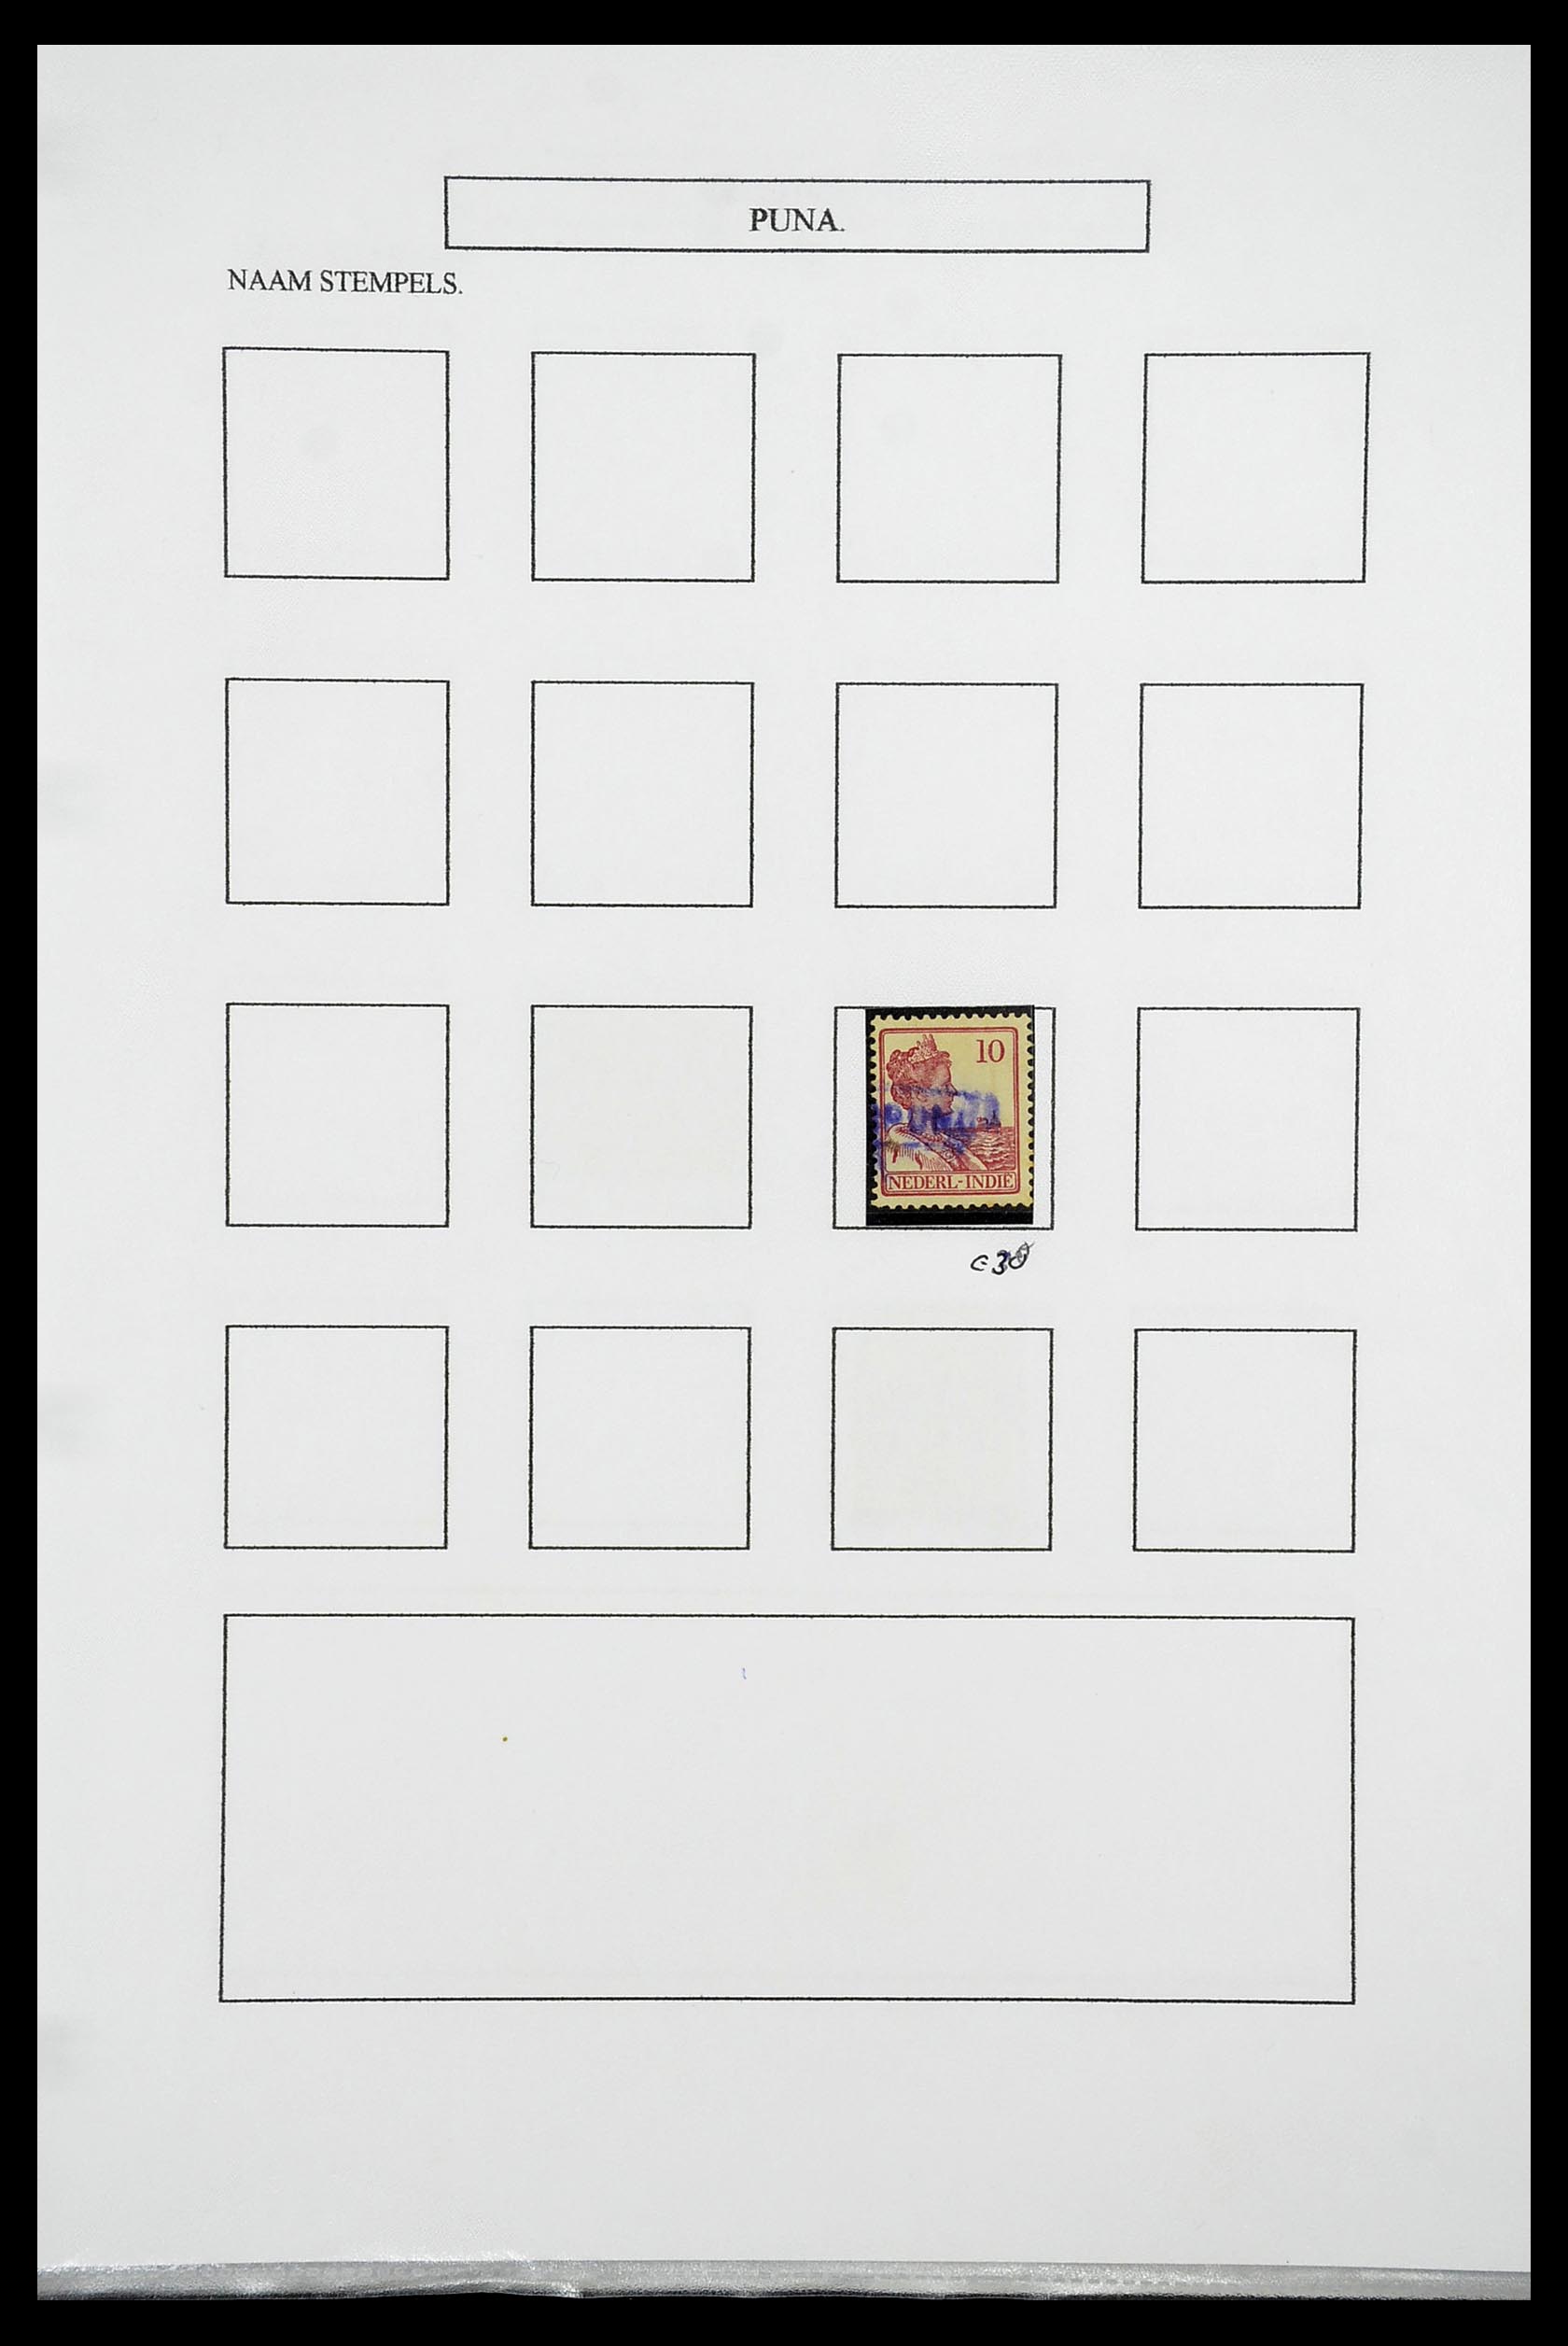 34663 093 - Postzegelverzameling 34663 Nederlands Indië naamstempels.